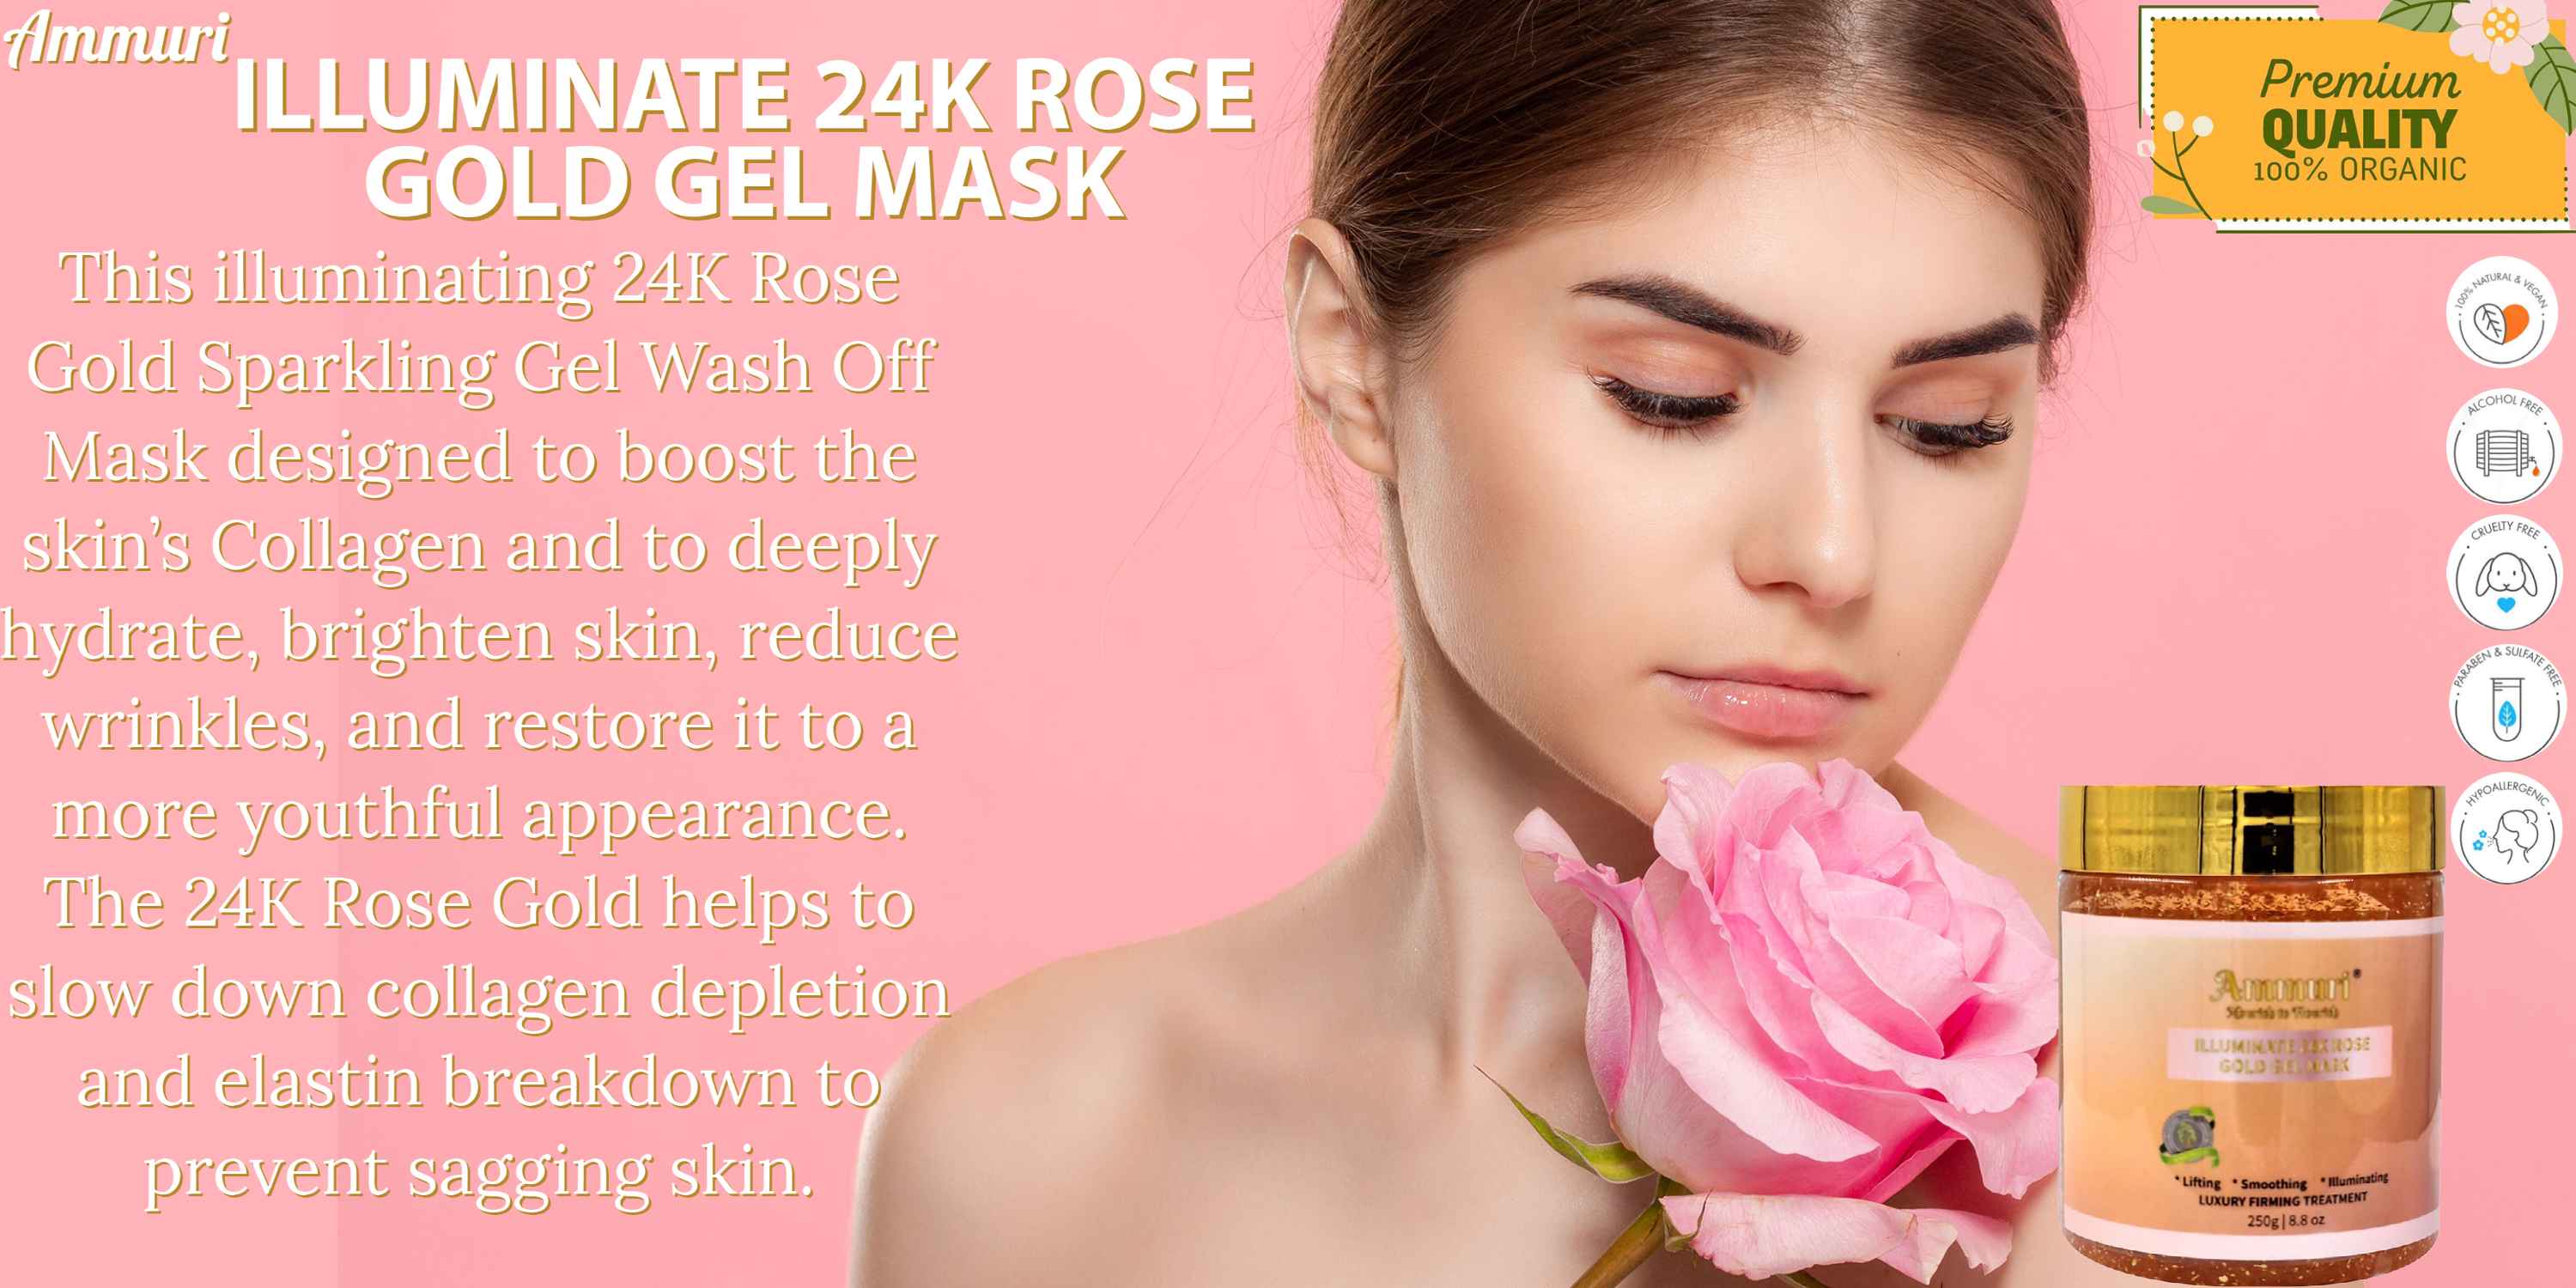 Ammuri Anti Aging Illuminate 24K Rose Gold Collagen Mask Luxury Treatment